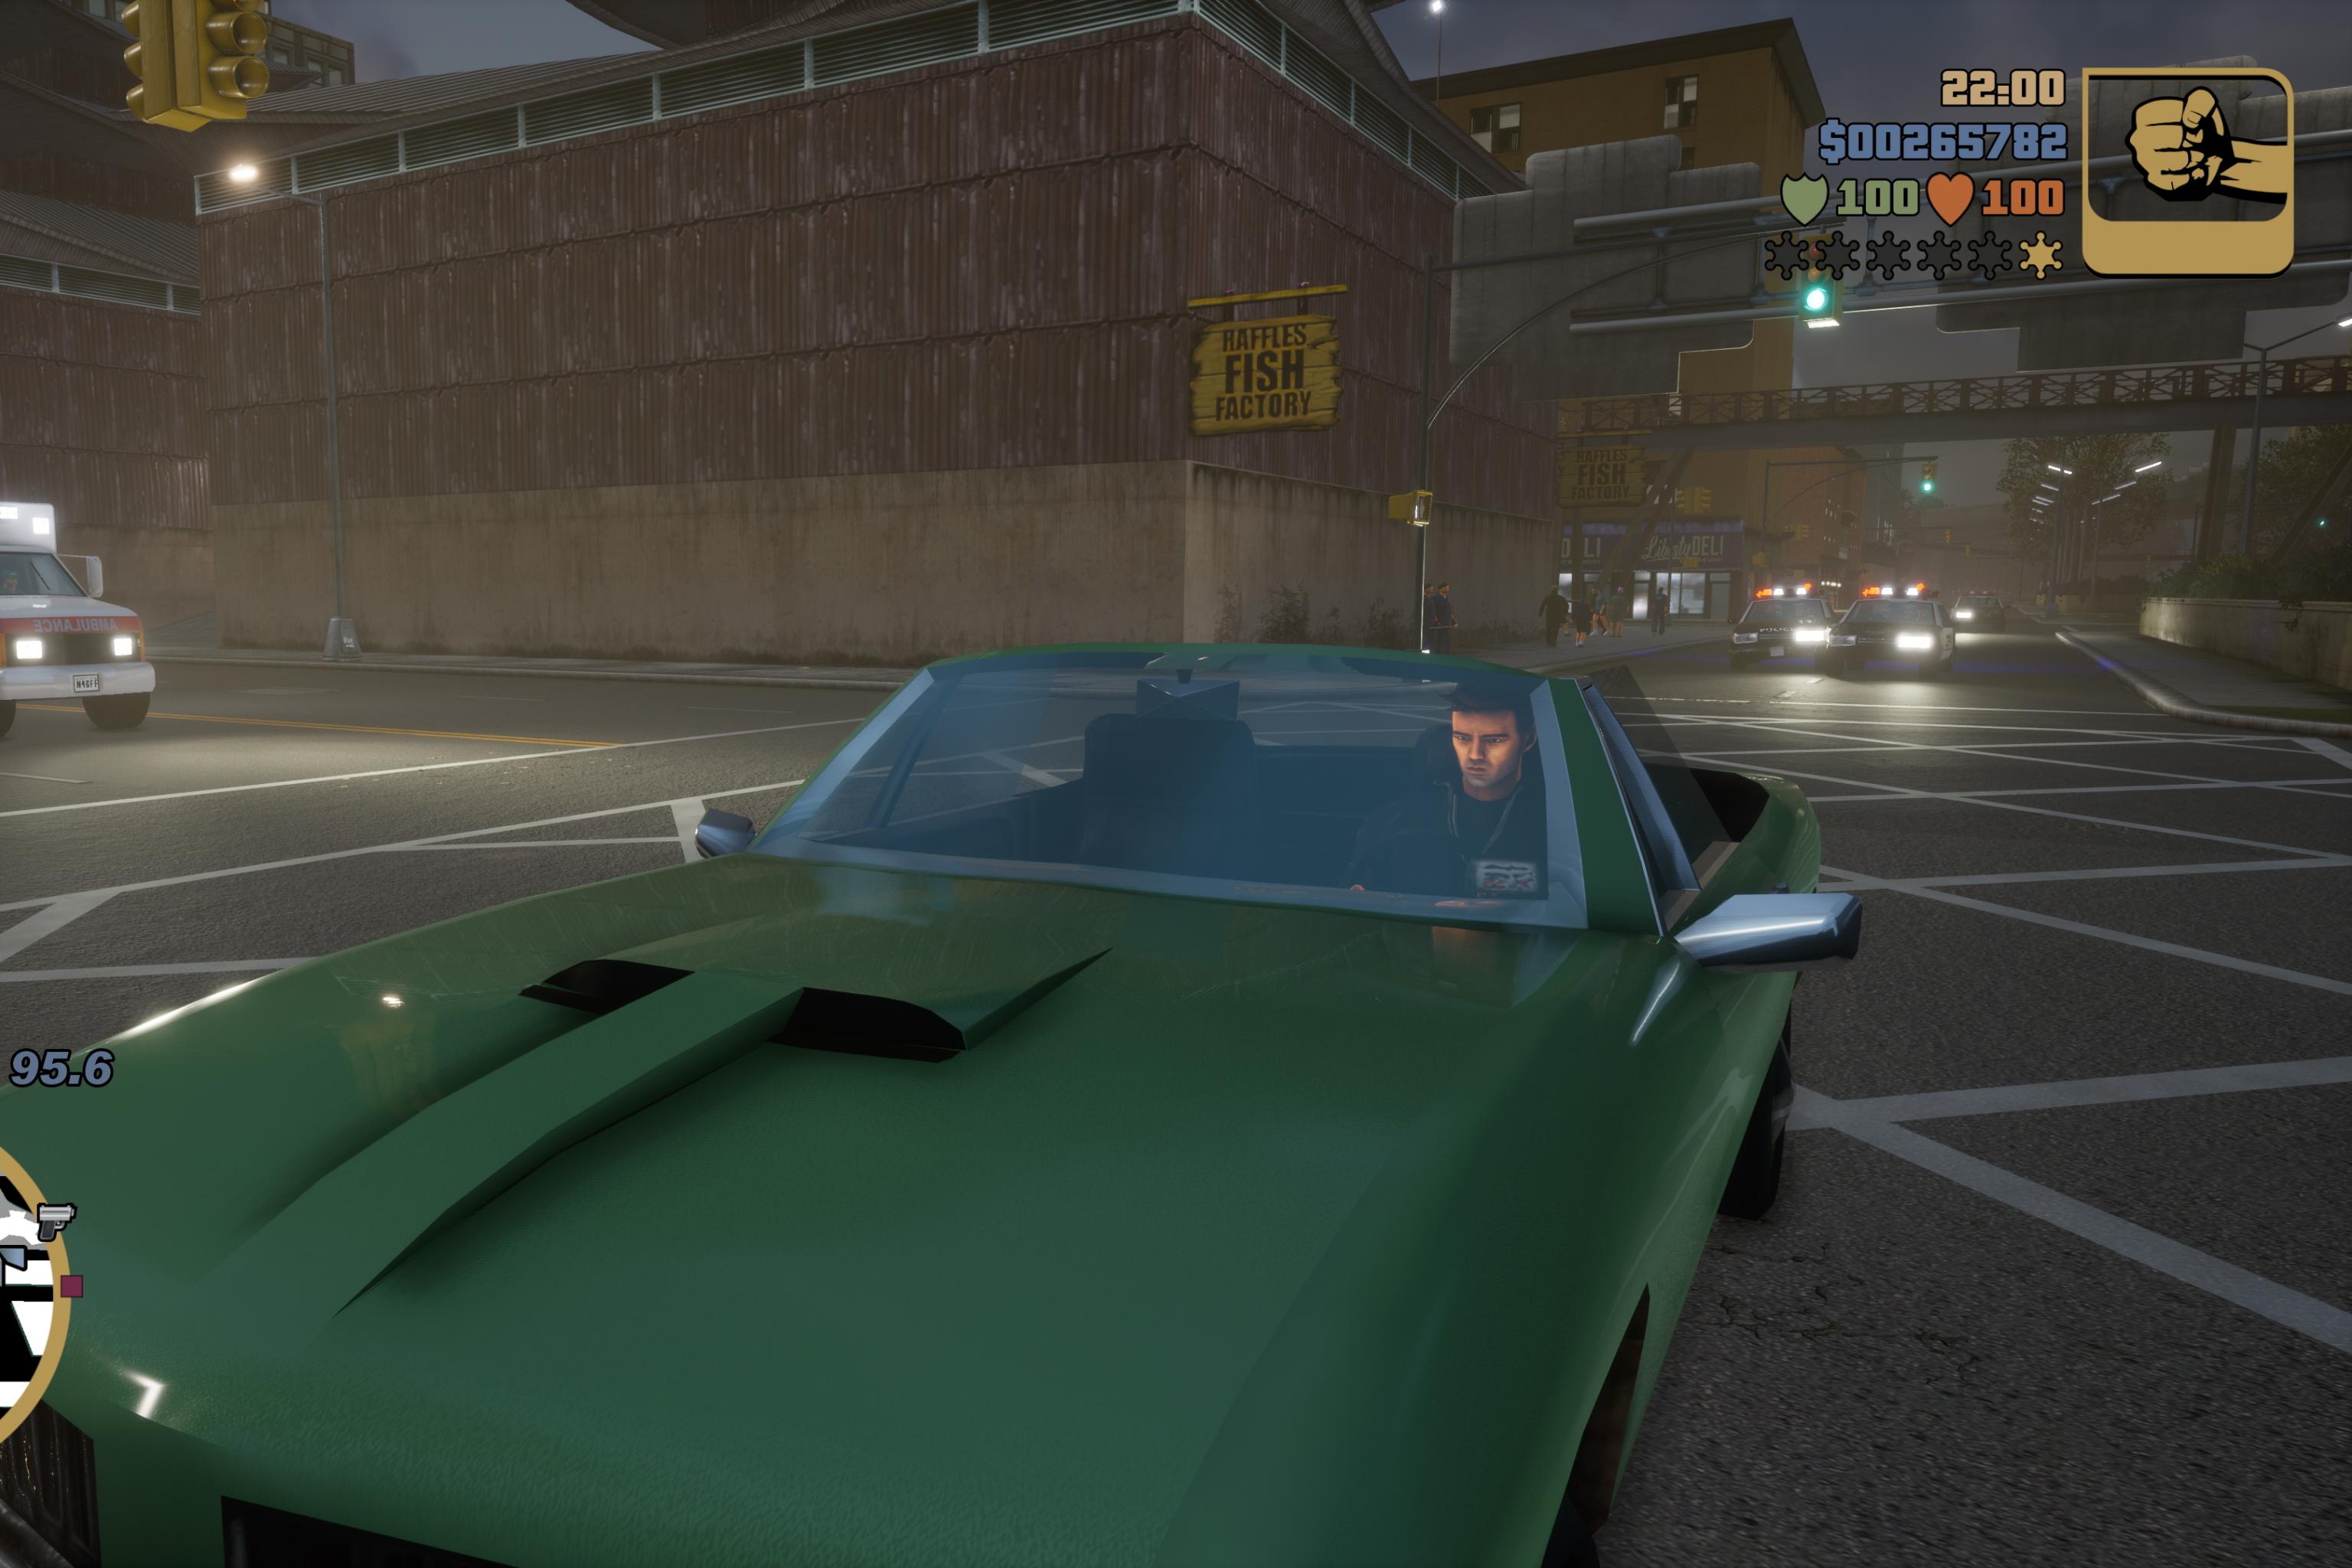 Grand Theft Auto III - Speedrun